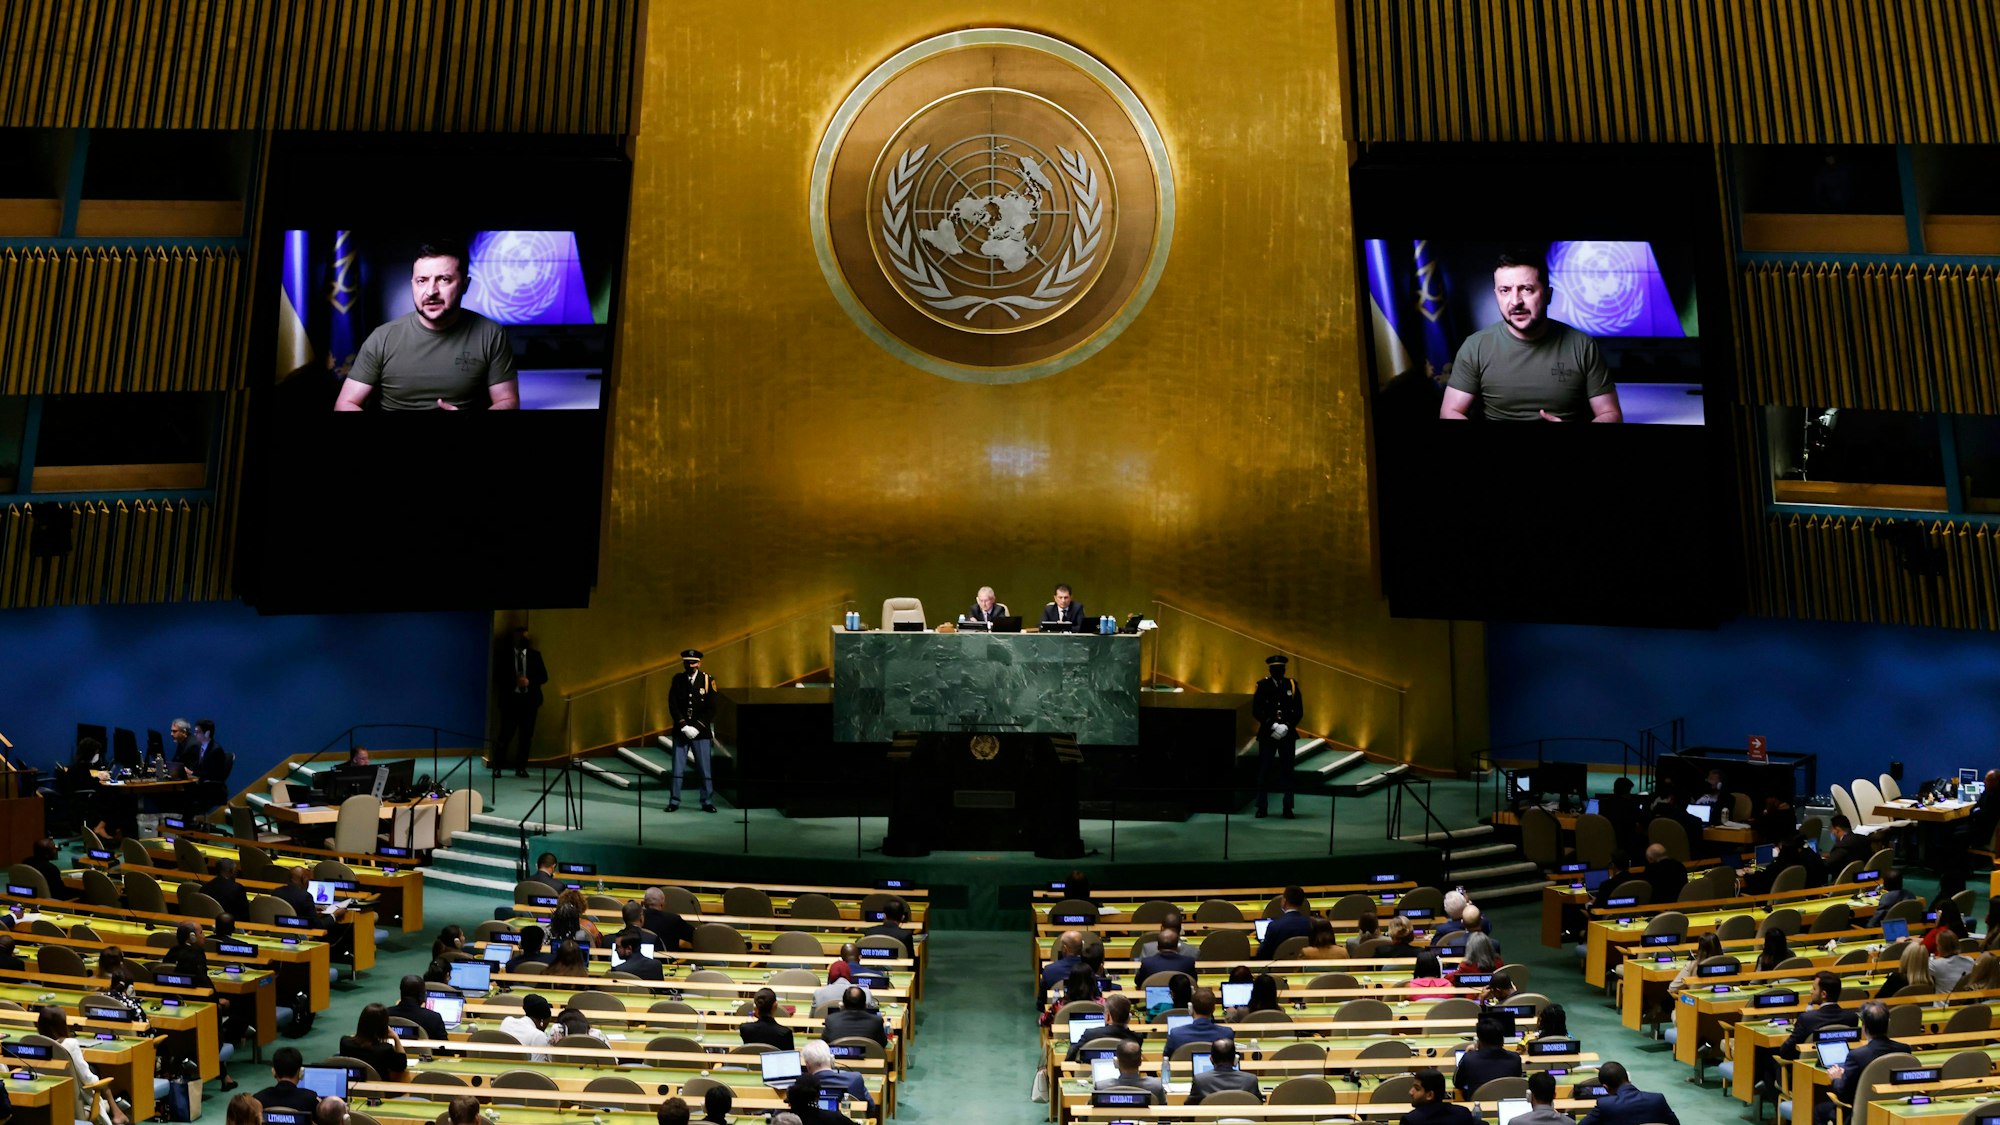 Der Sitzungssaal in New York im September 2022: Der ukrainische Präsident Wolodymyr Selenskyj sprach per Videoschalte zur 77. Sitzung der Generalversammlung der Vereinten Nationen.